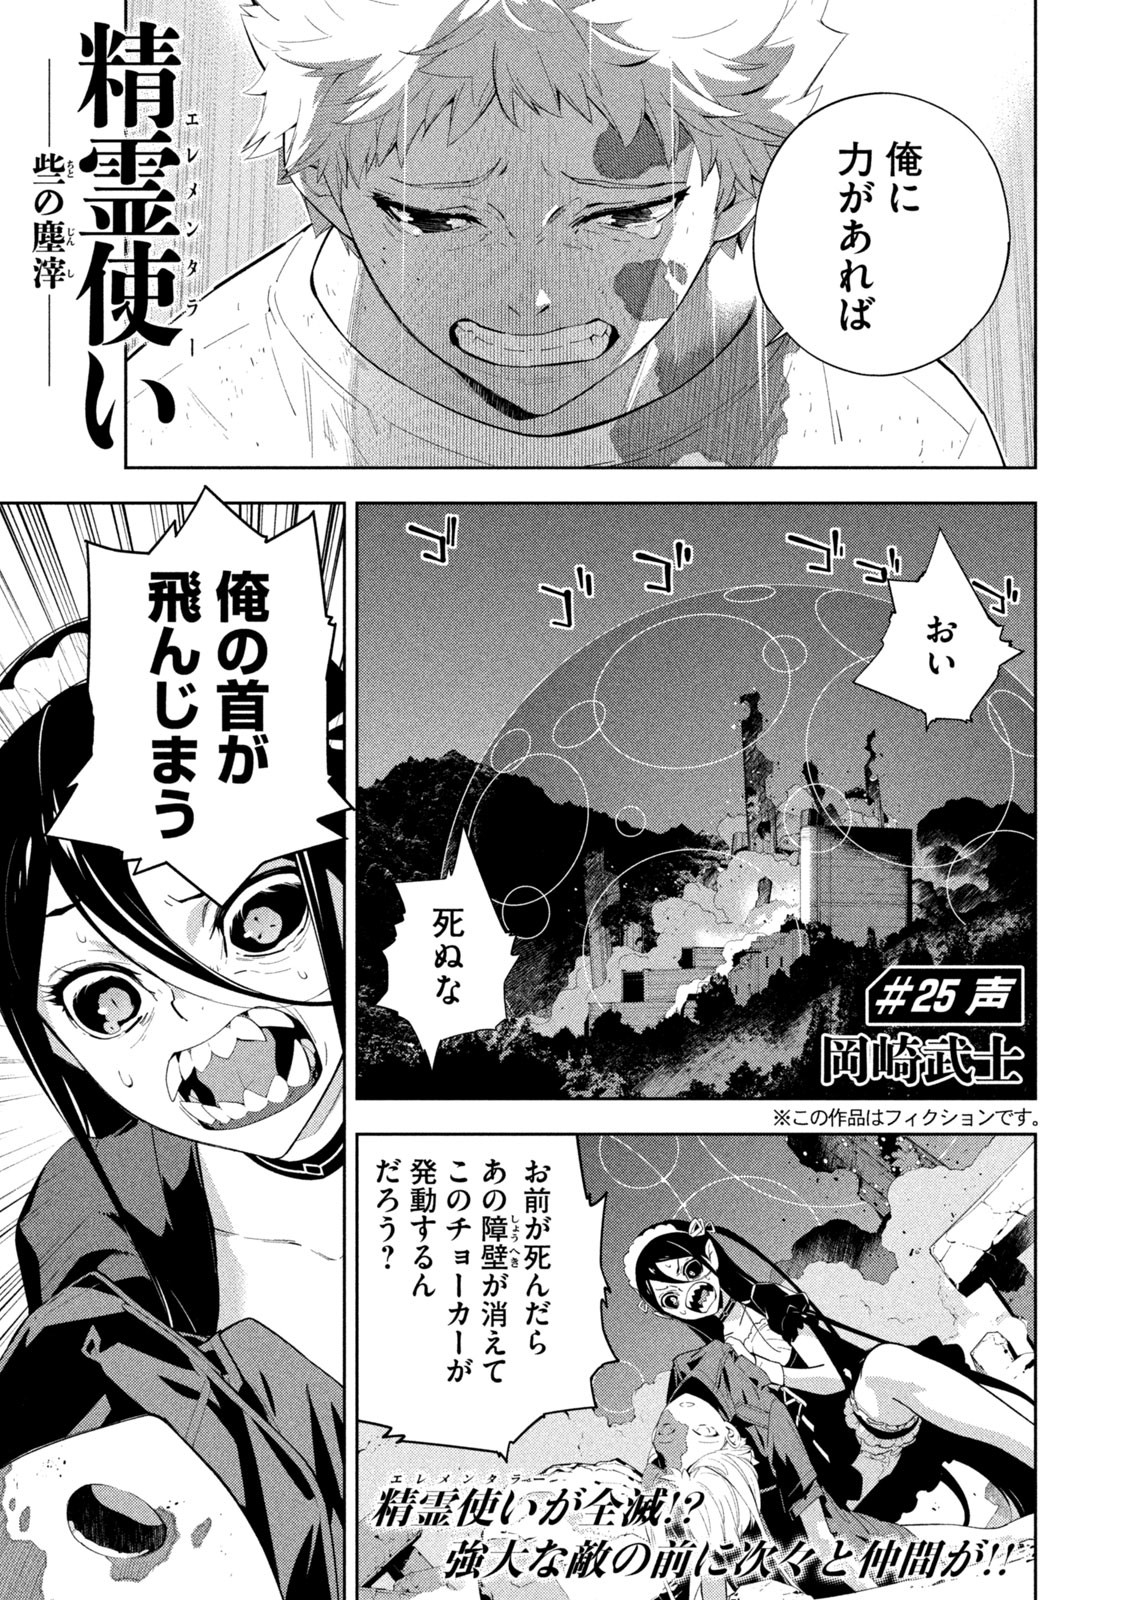 Seirei Tsukai – Chito no Jinshi - Chapter 25 - Page 1